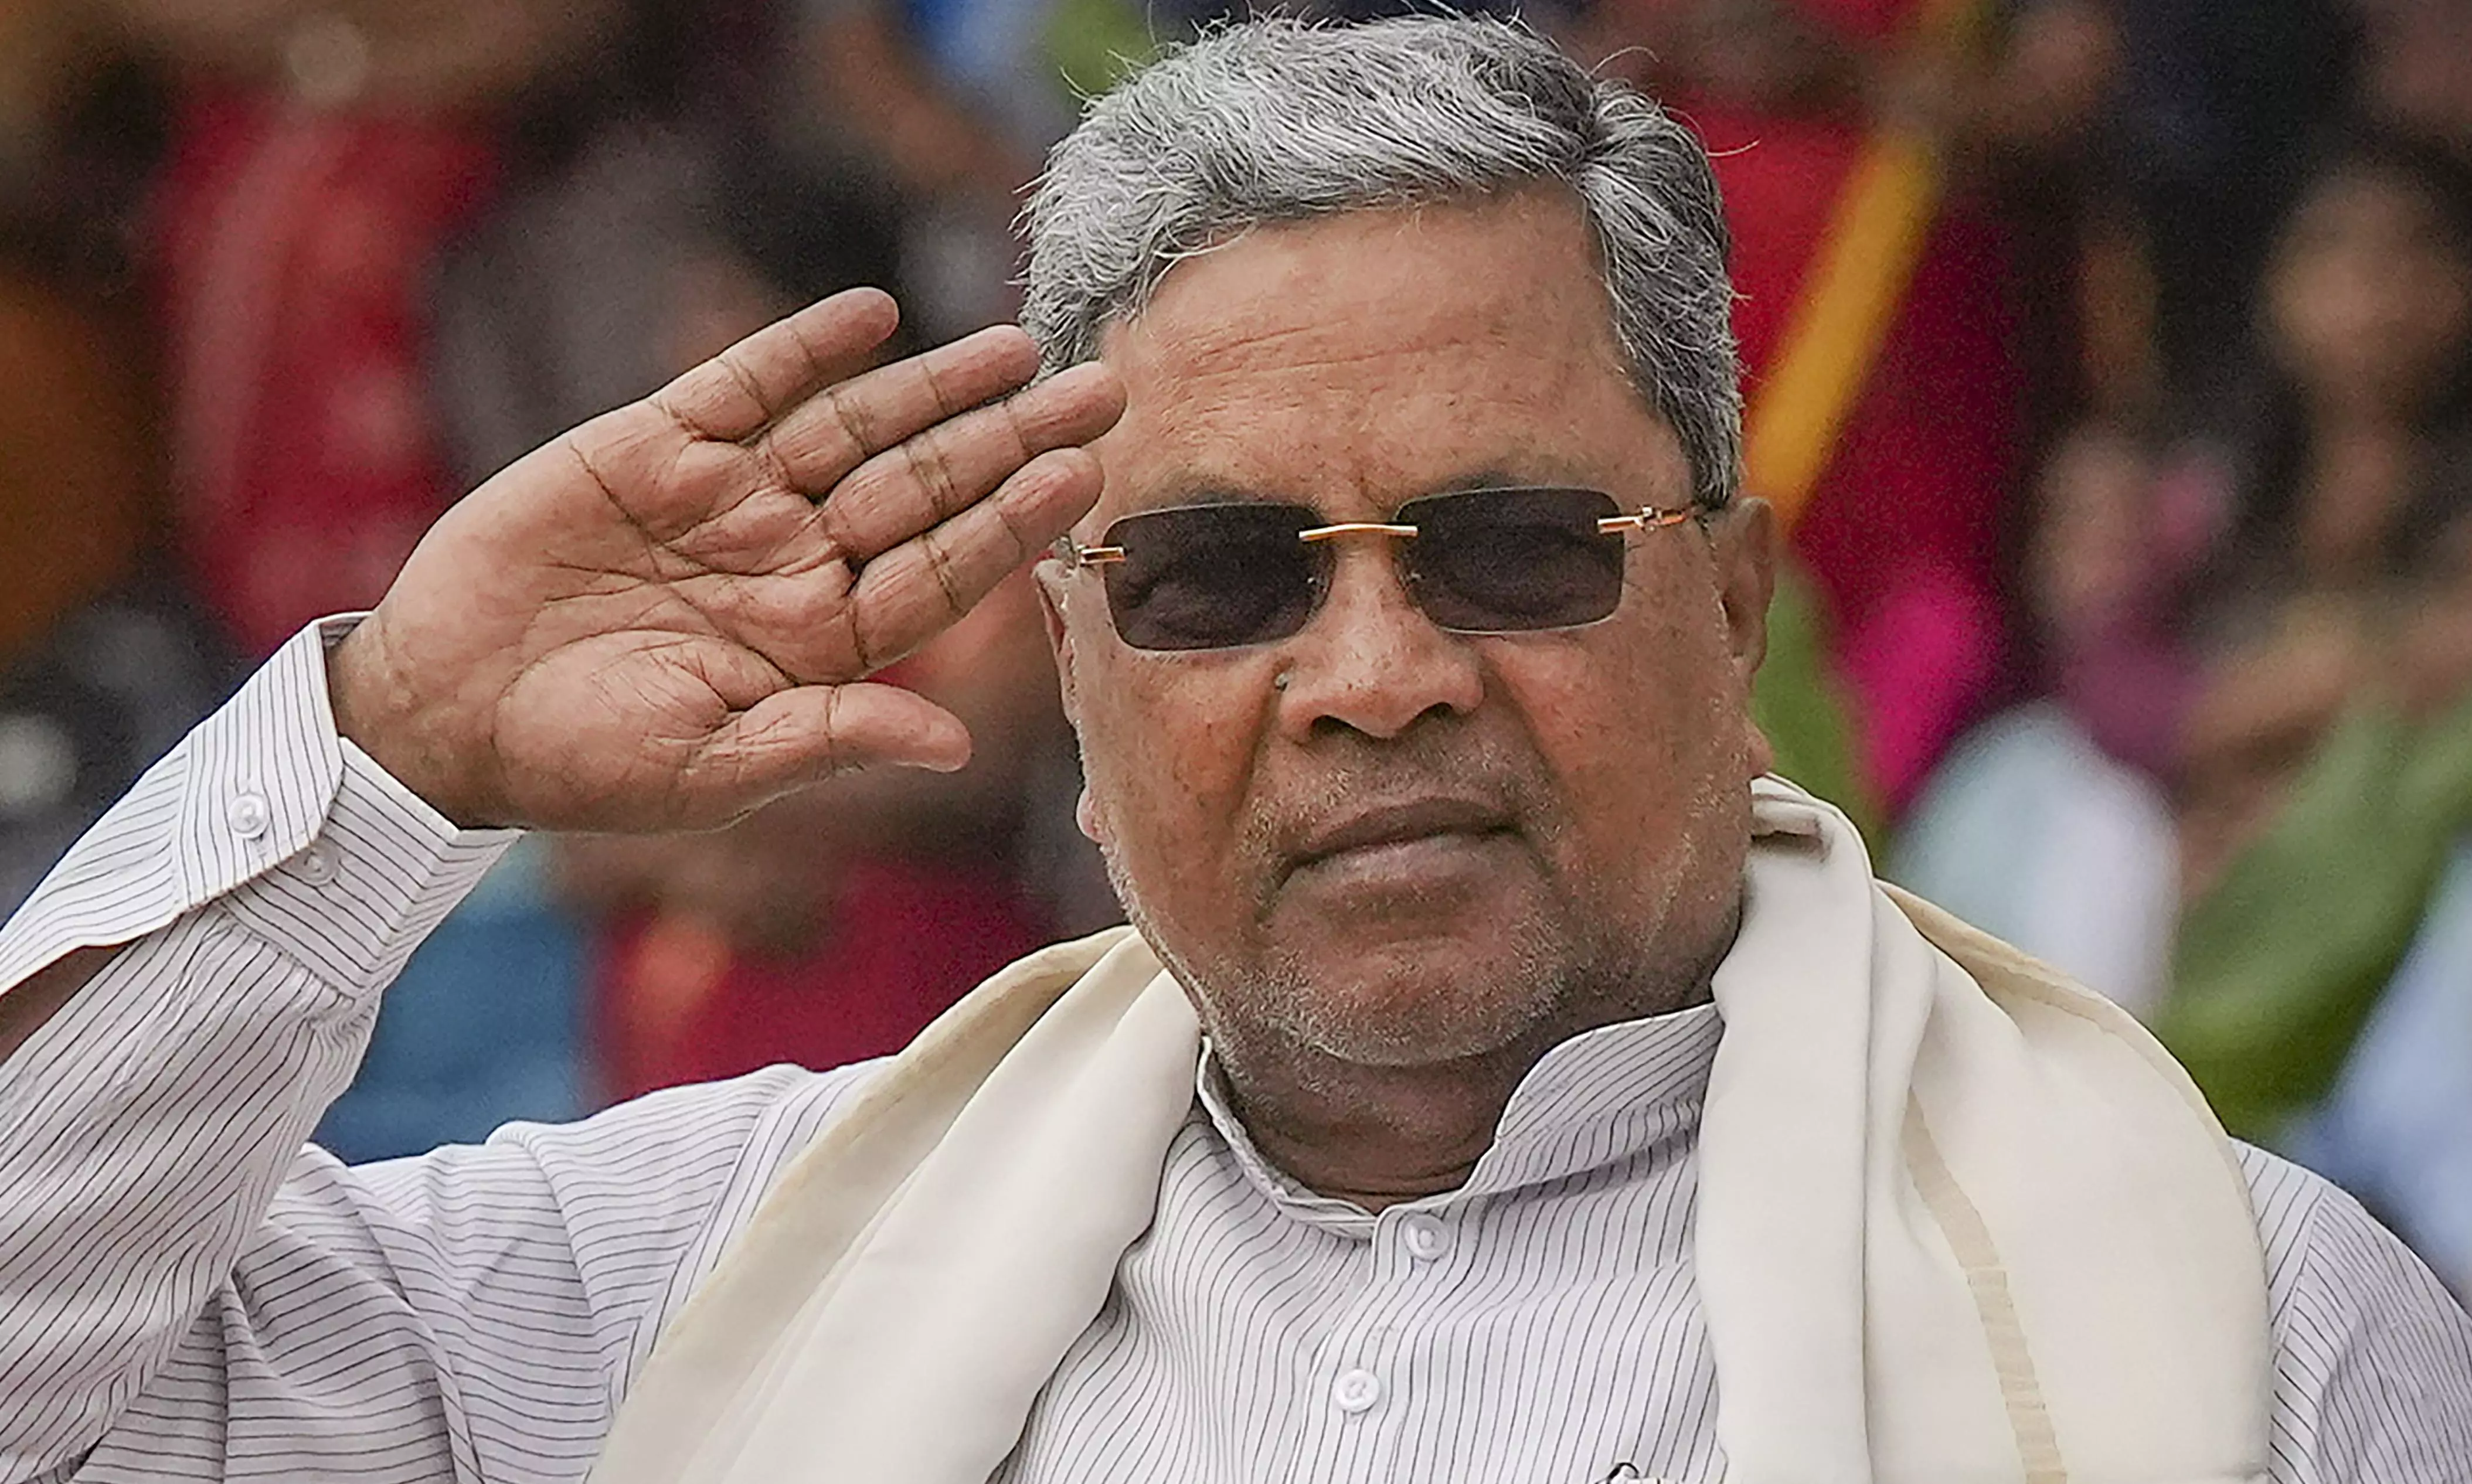 Karnataka | If corruption is found, action will be taken: CM Siddaramaiah